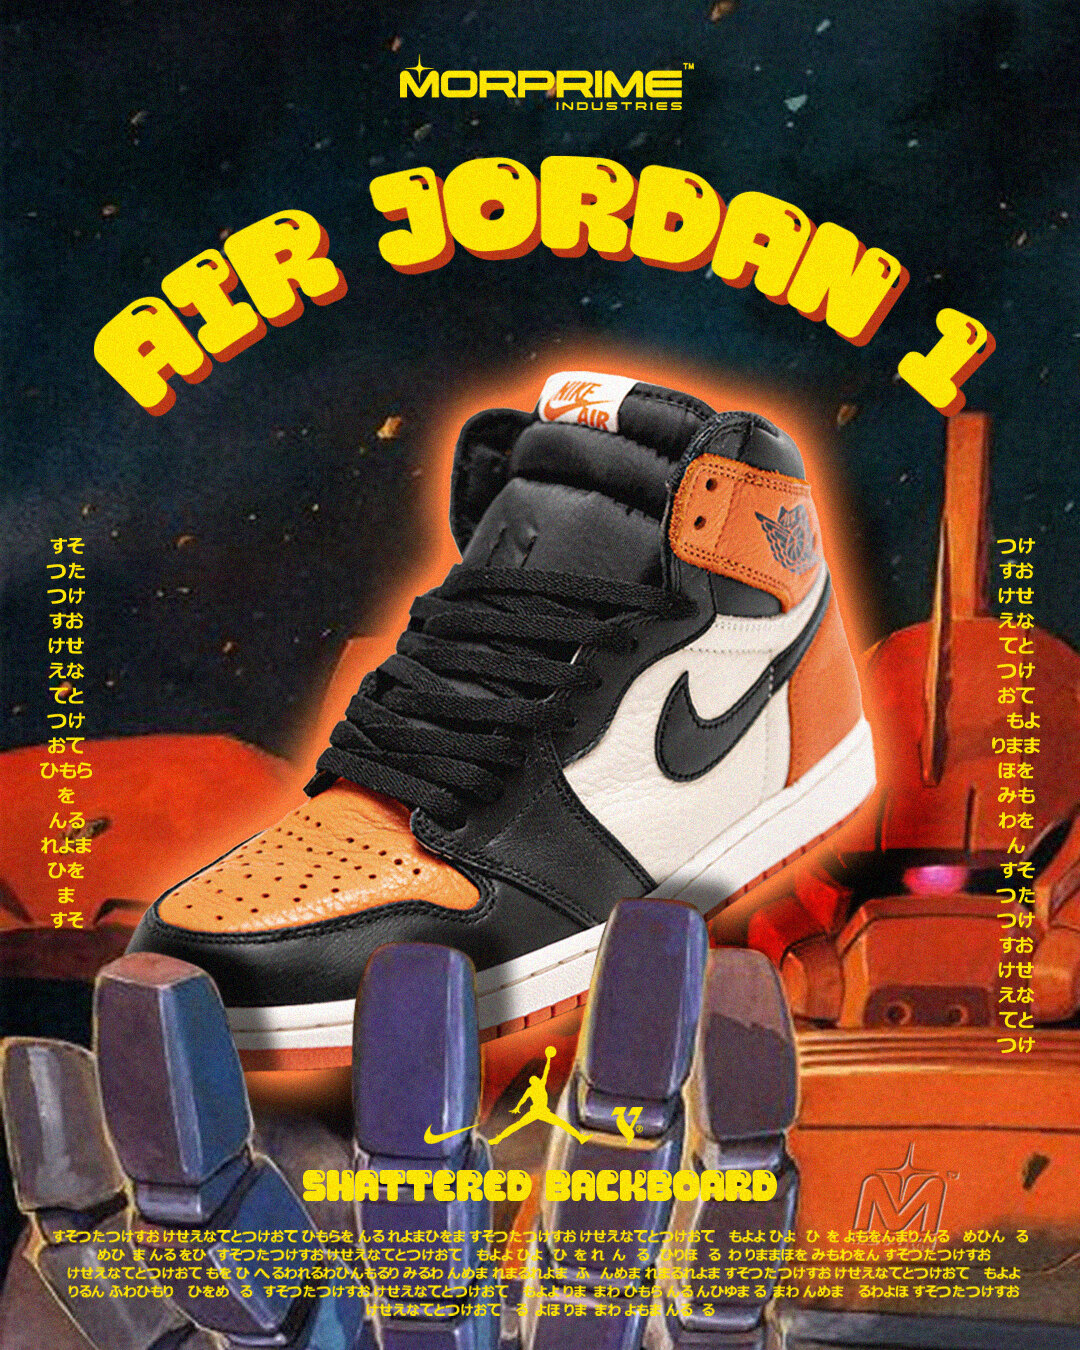 The history of Nike's Air Jordan 'Shattered Backboard' — Morprime